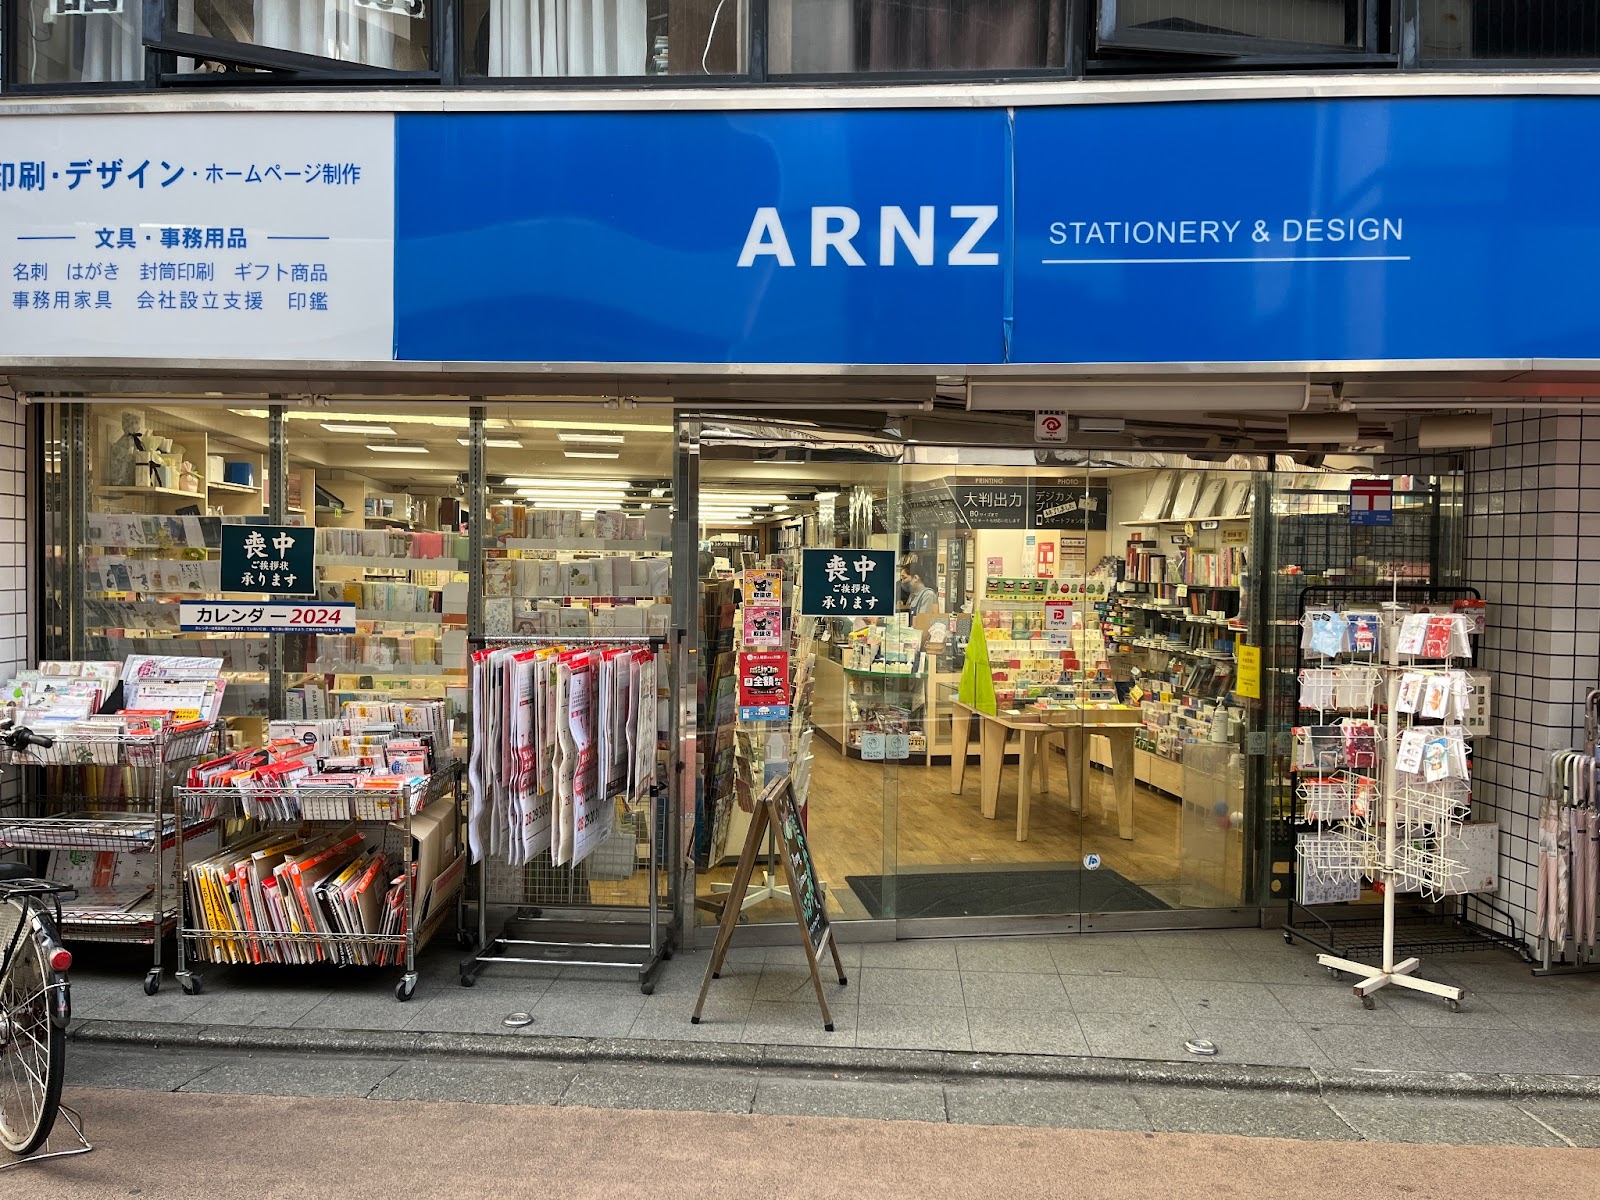 昭和21年に「更正堂文房具店」として創業した老舗文房具店「ARNZ」